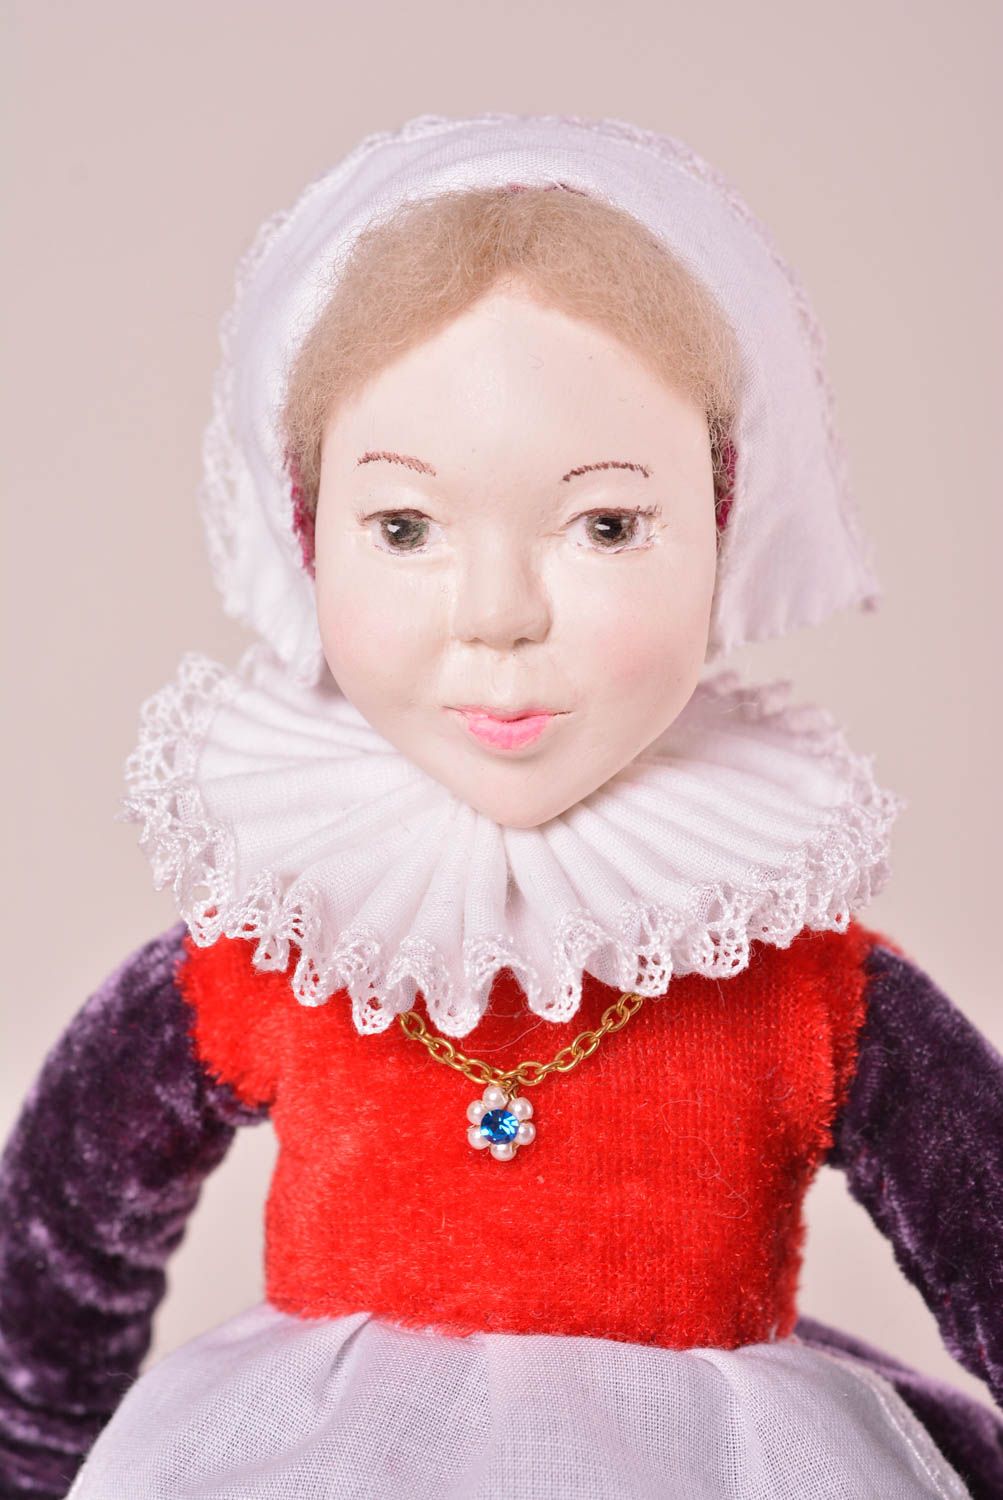 Авторская кукла игрушка ручной работы дизайнерская кукла из пластики и текстиля фото 3